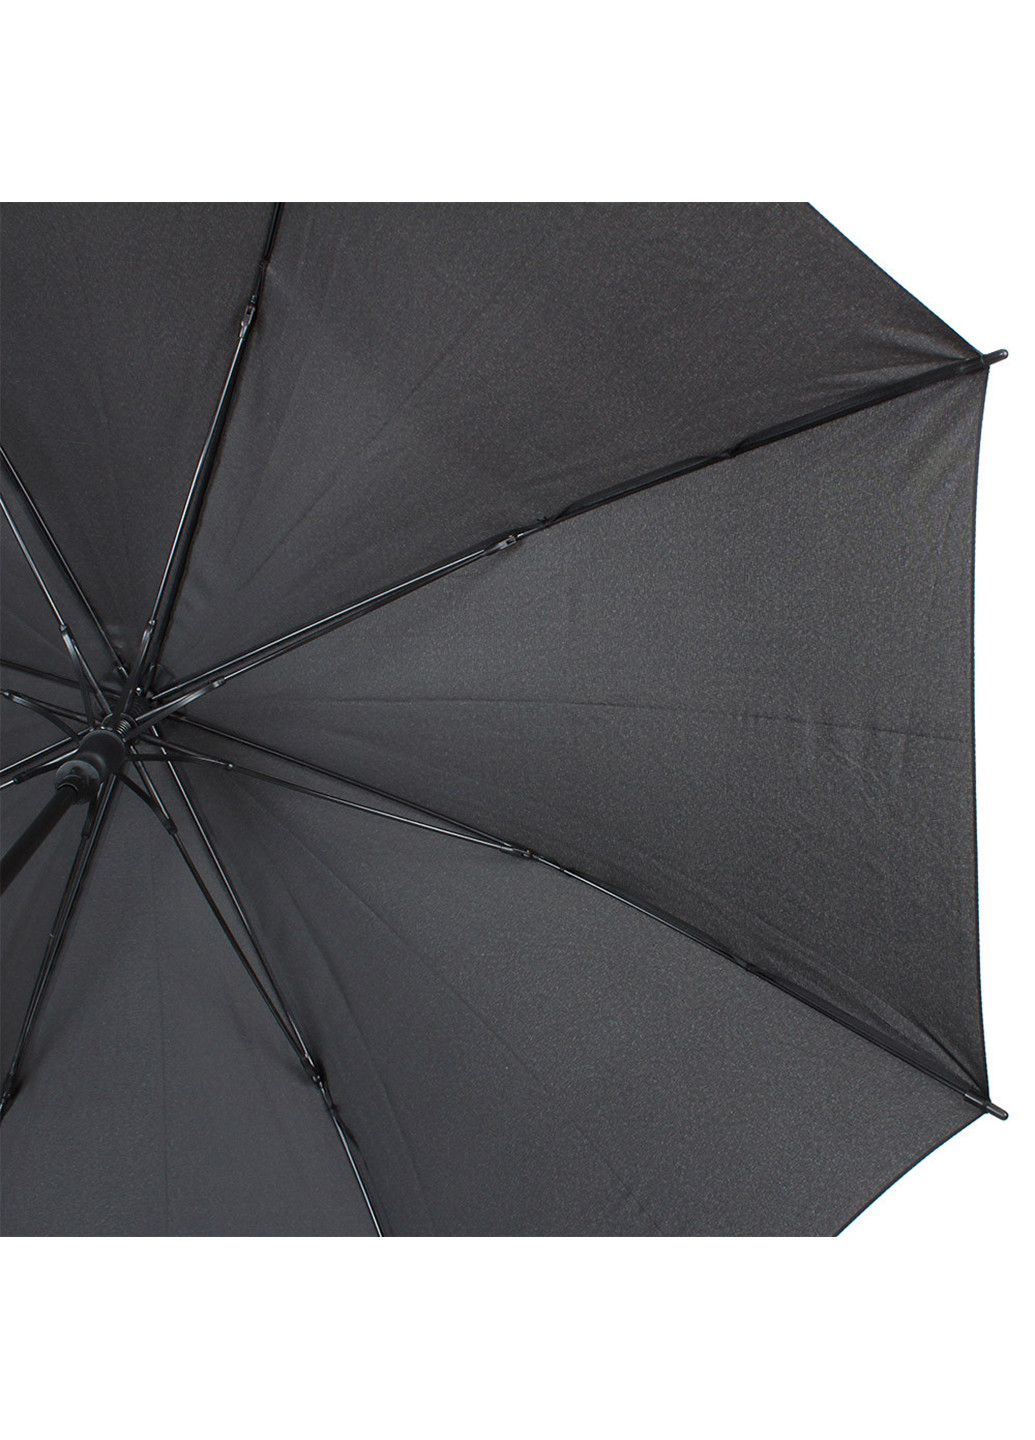 Женский зонт-трость полуавтомат 103 см Doppler (255710769)